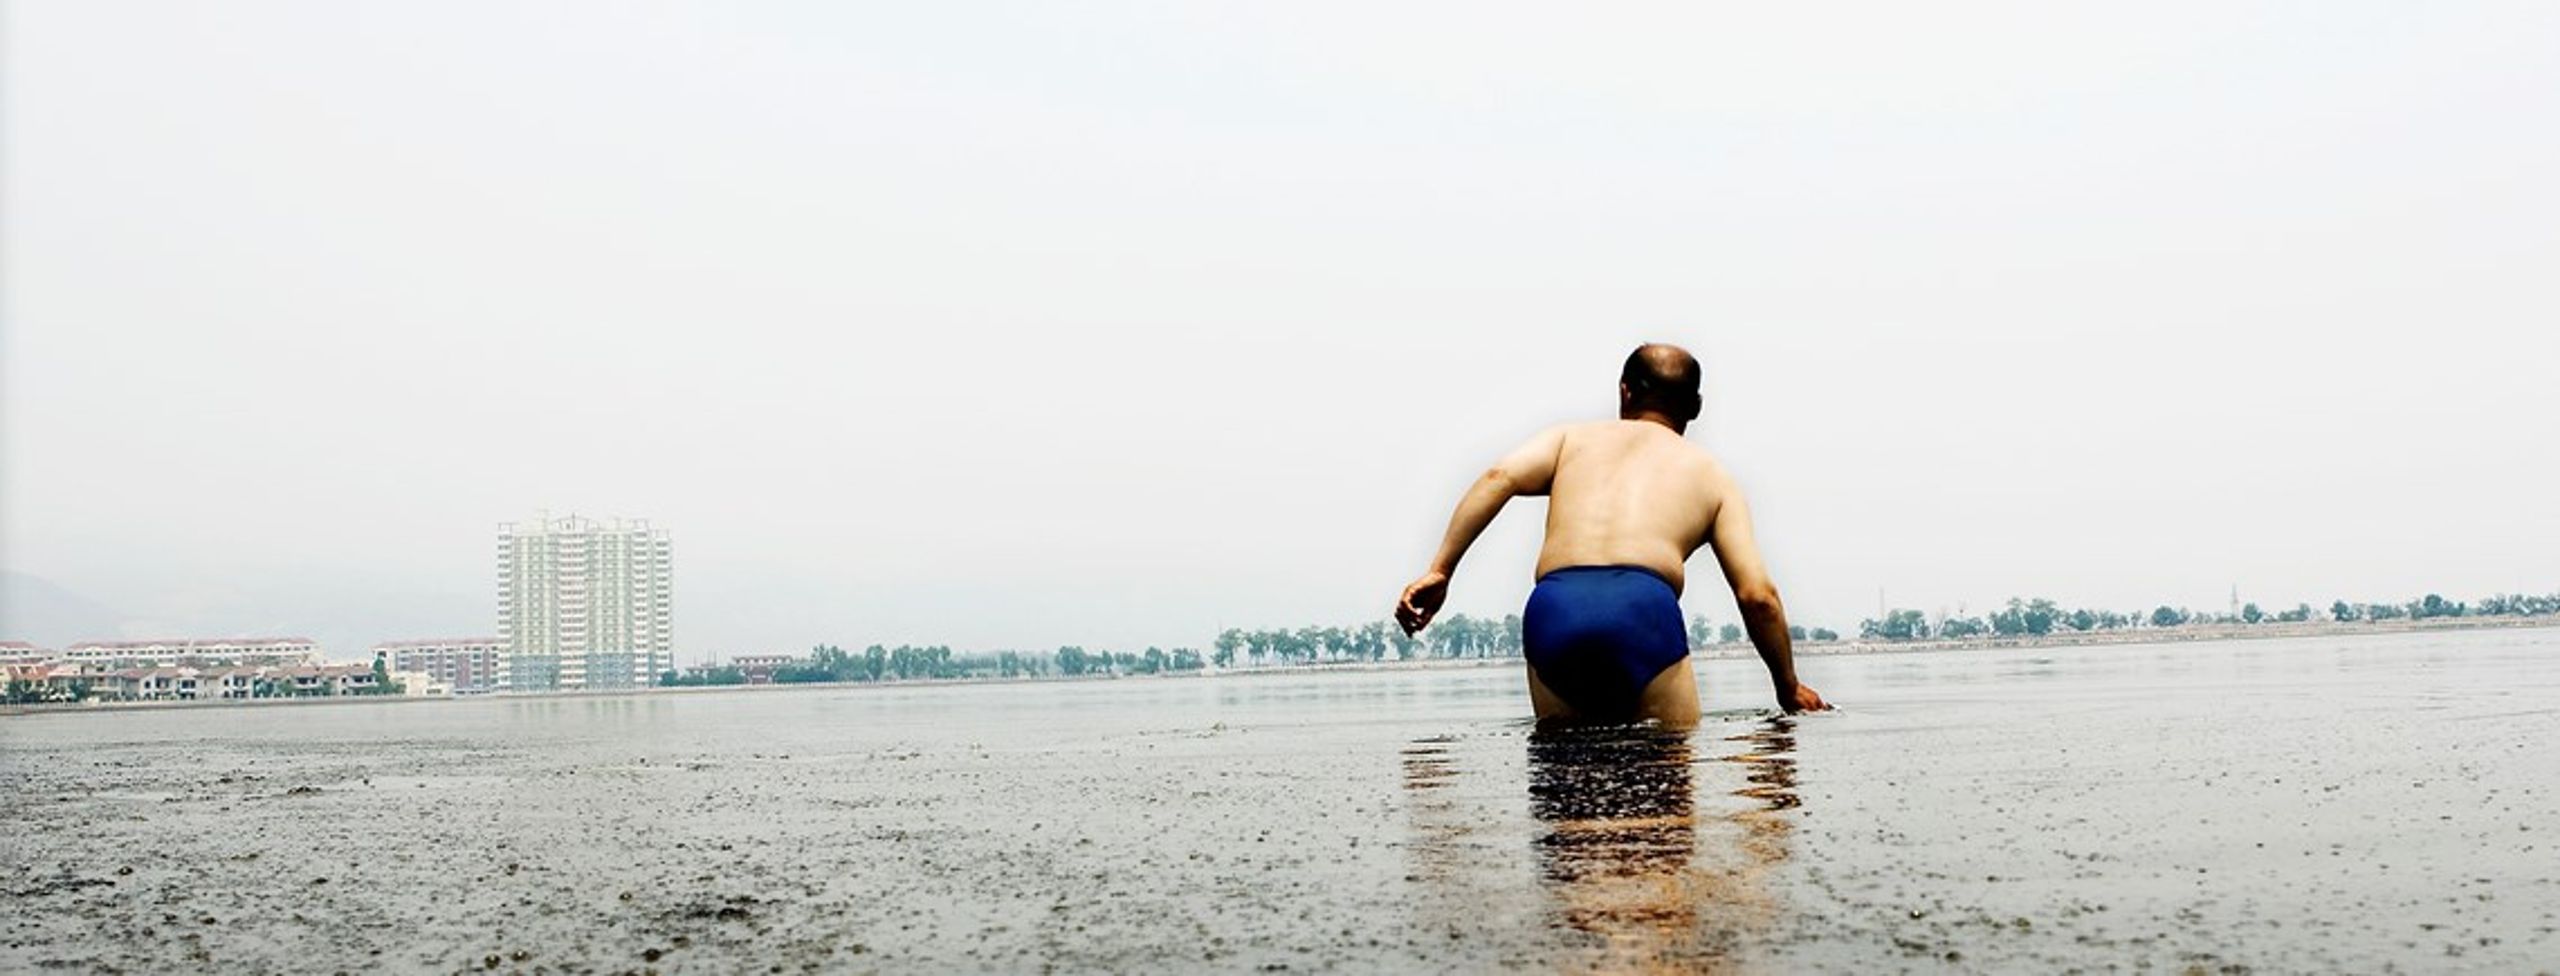 En ældre kinesisk&nbsp;mand tager sig en dukkert i en voldsomt forurenet sø i Shanxi.&nbsp;